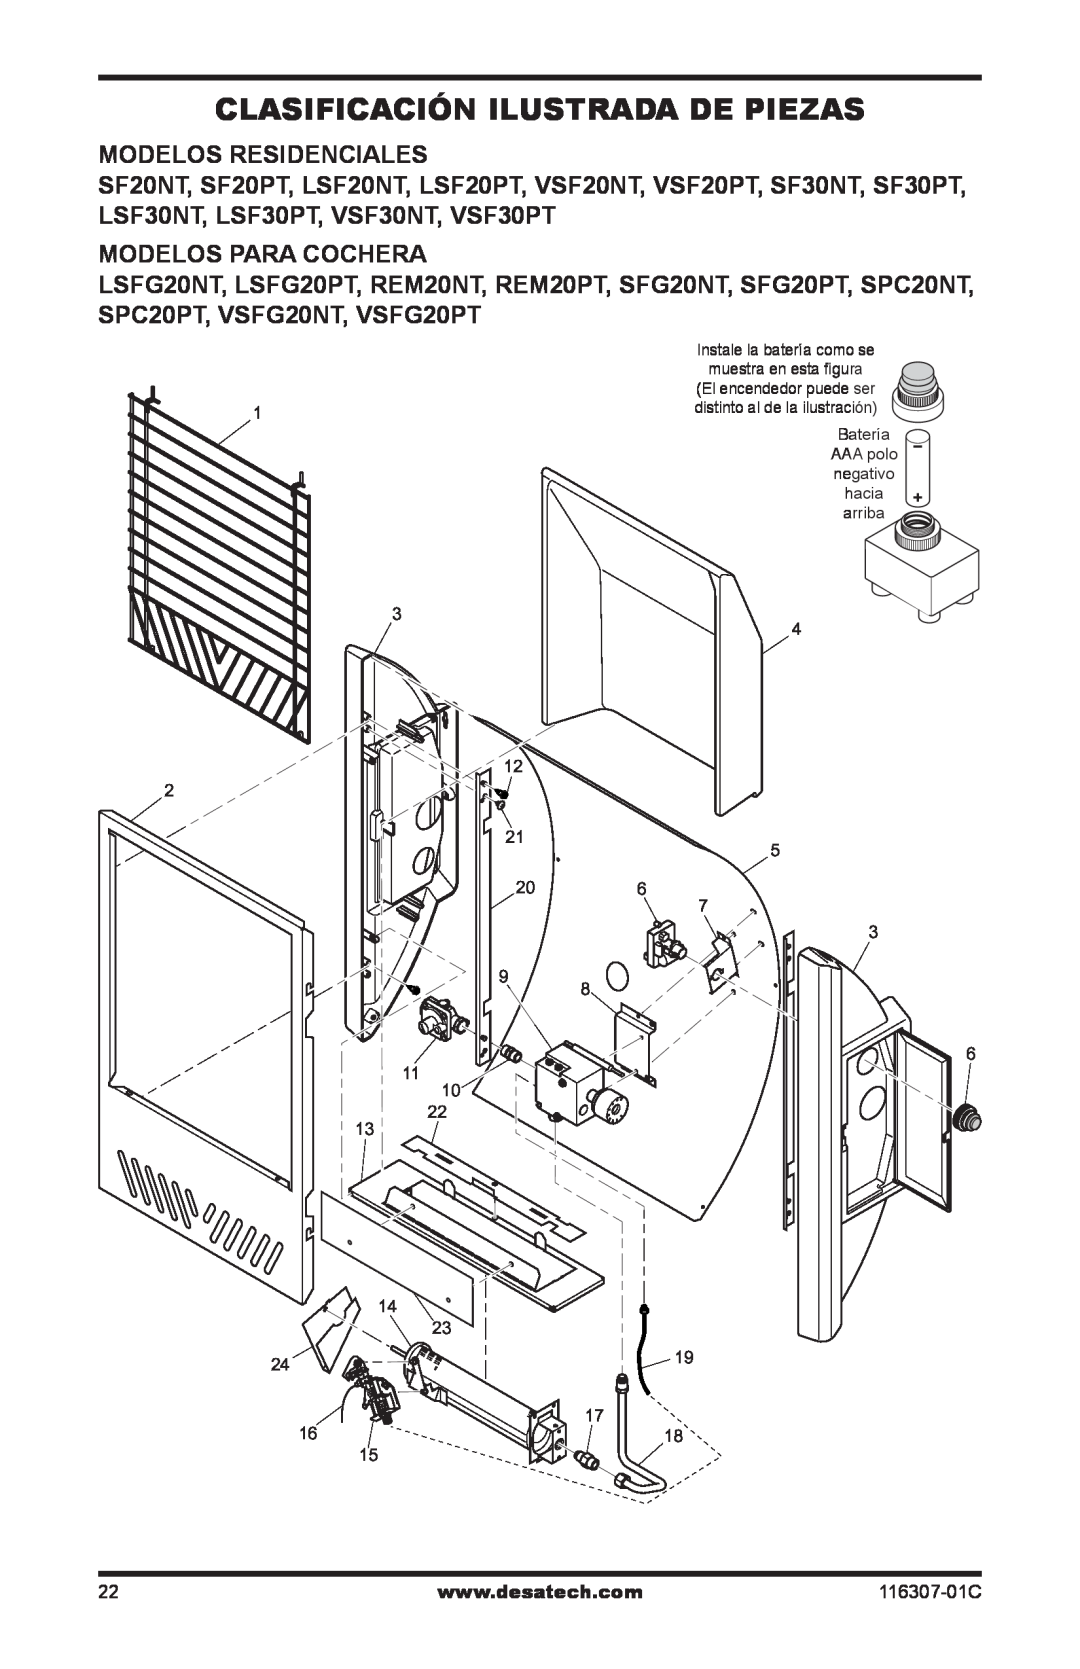 Desa LSFG20NT, VSF30PT installation manual Clasificación ilustrada de piezas, Modelos Residenciales, Modelos Para Cochera 